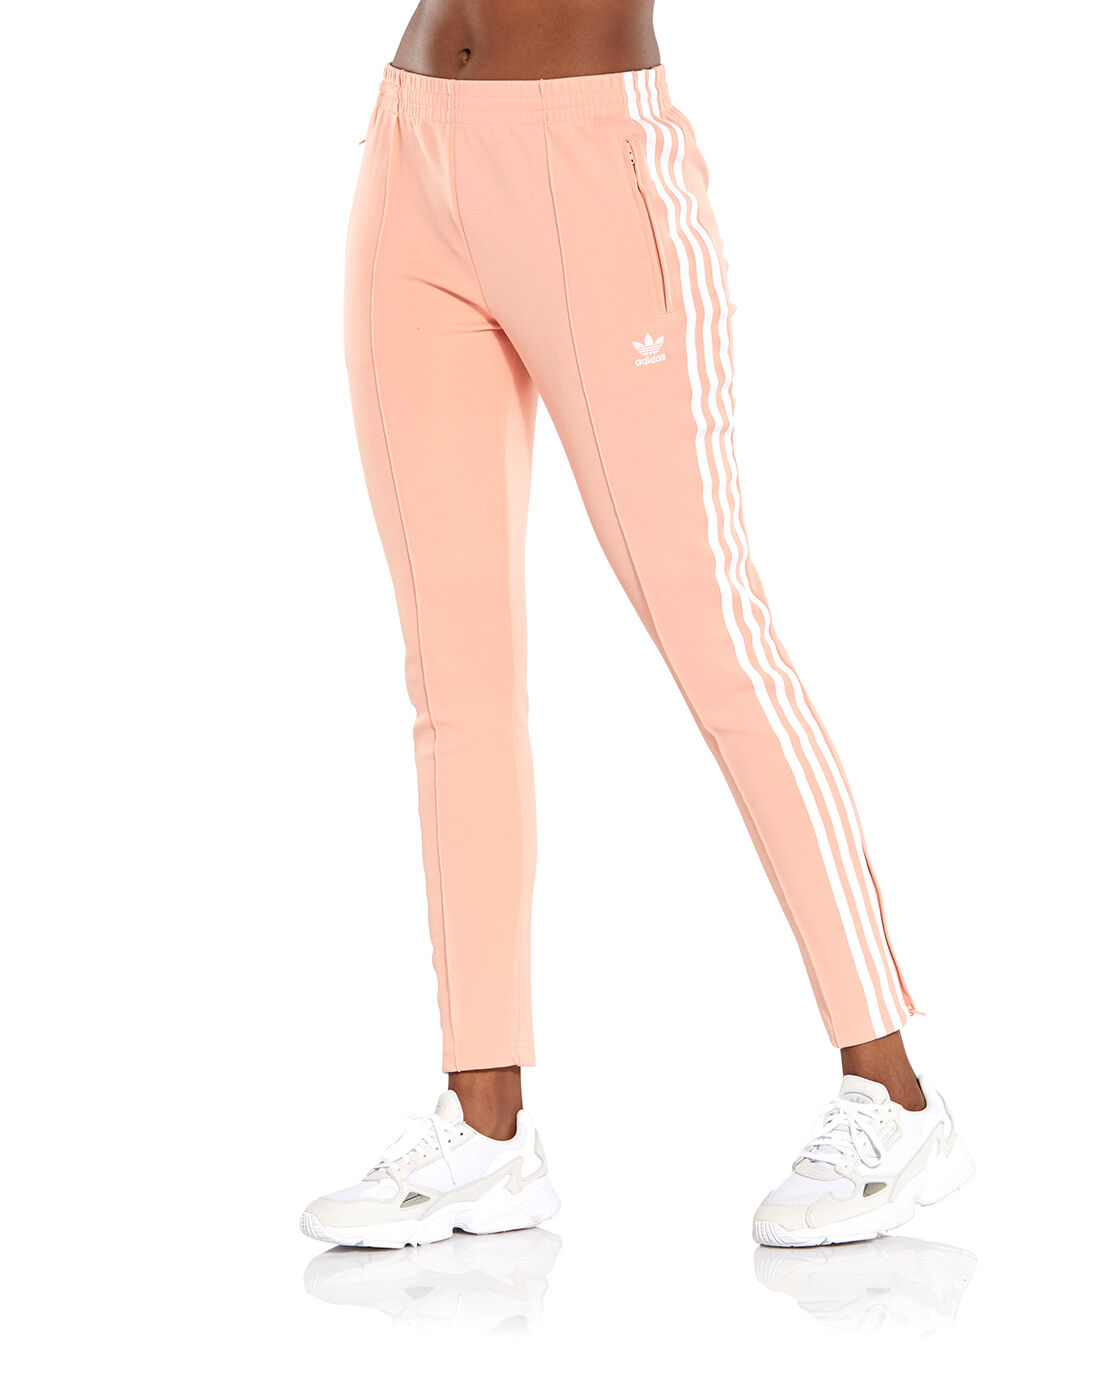 peach adidas jogging suit